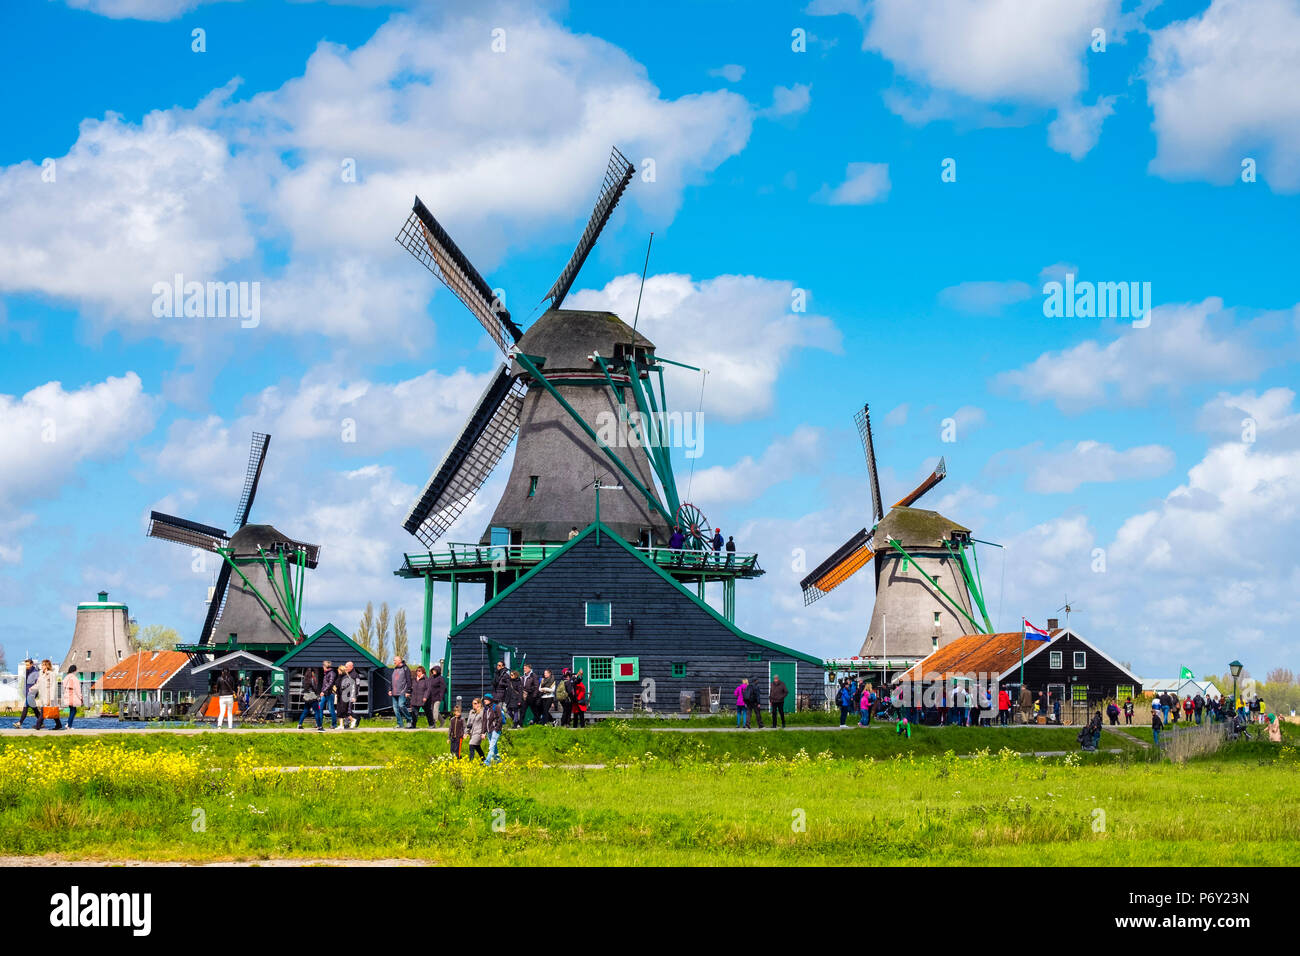 Pays Bas, Hollande du Nord, Zaandam. Les moulins à vent historiques et maisons du village de Zaanse Schans. Banque D'Images